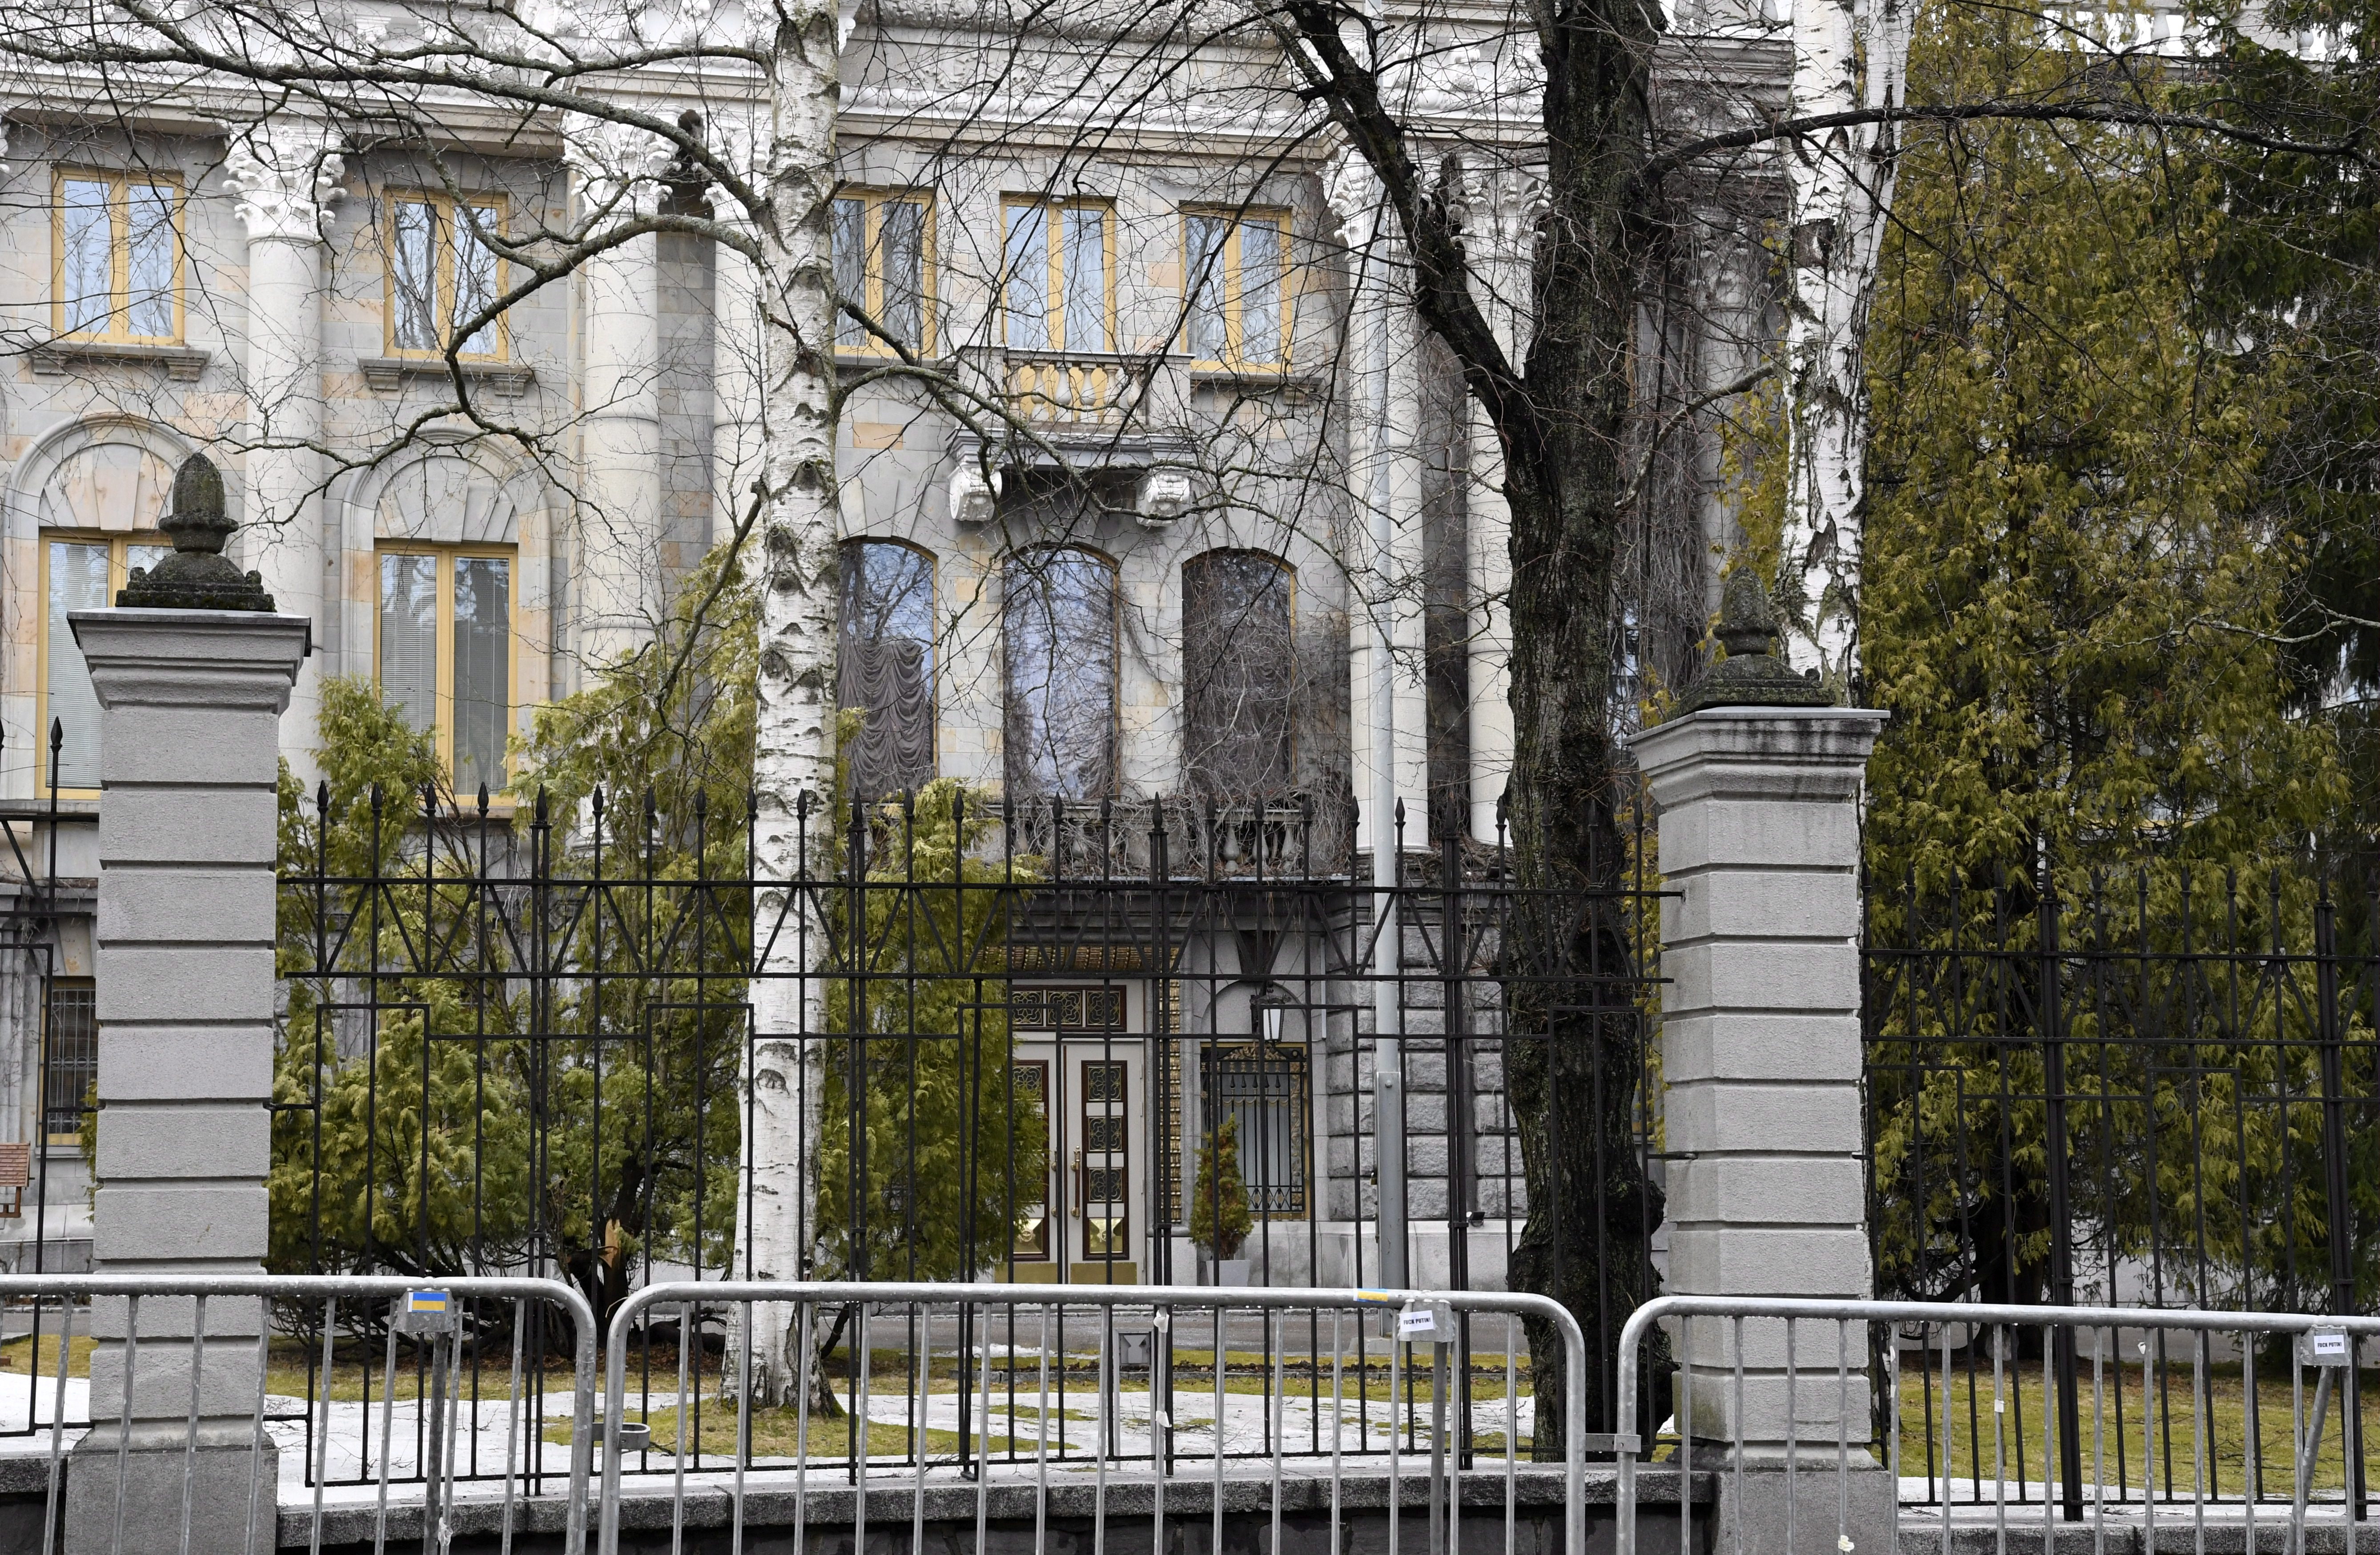 Los cuatro funcionarios rusos han sido declarados persona non grata en Austria. Lehtikuva/Jussi Nukari vía REUTERS/Archivo